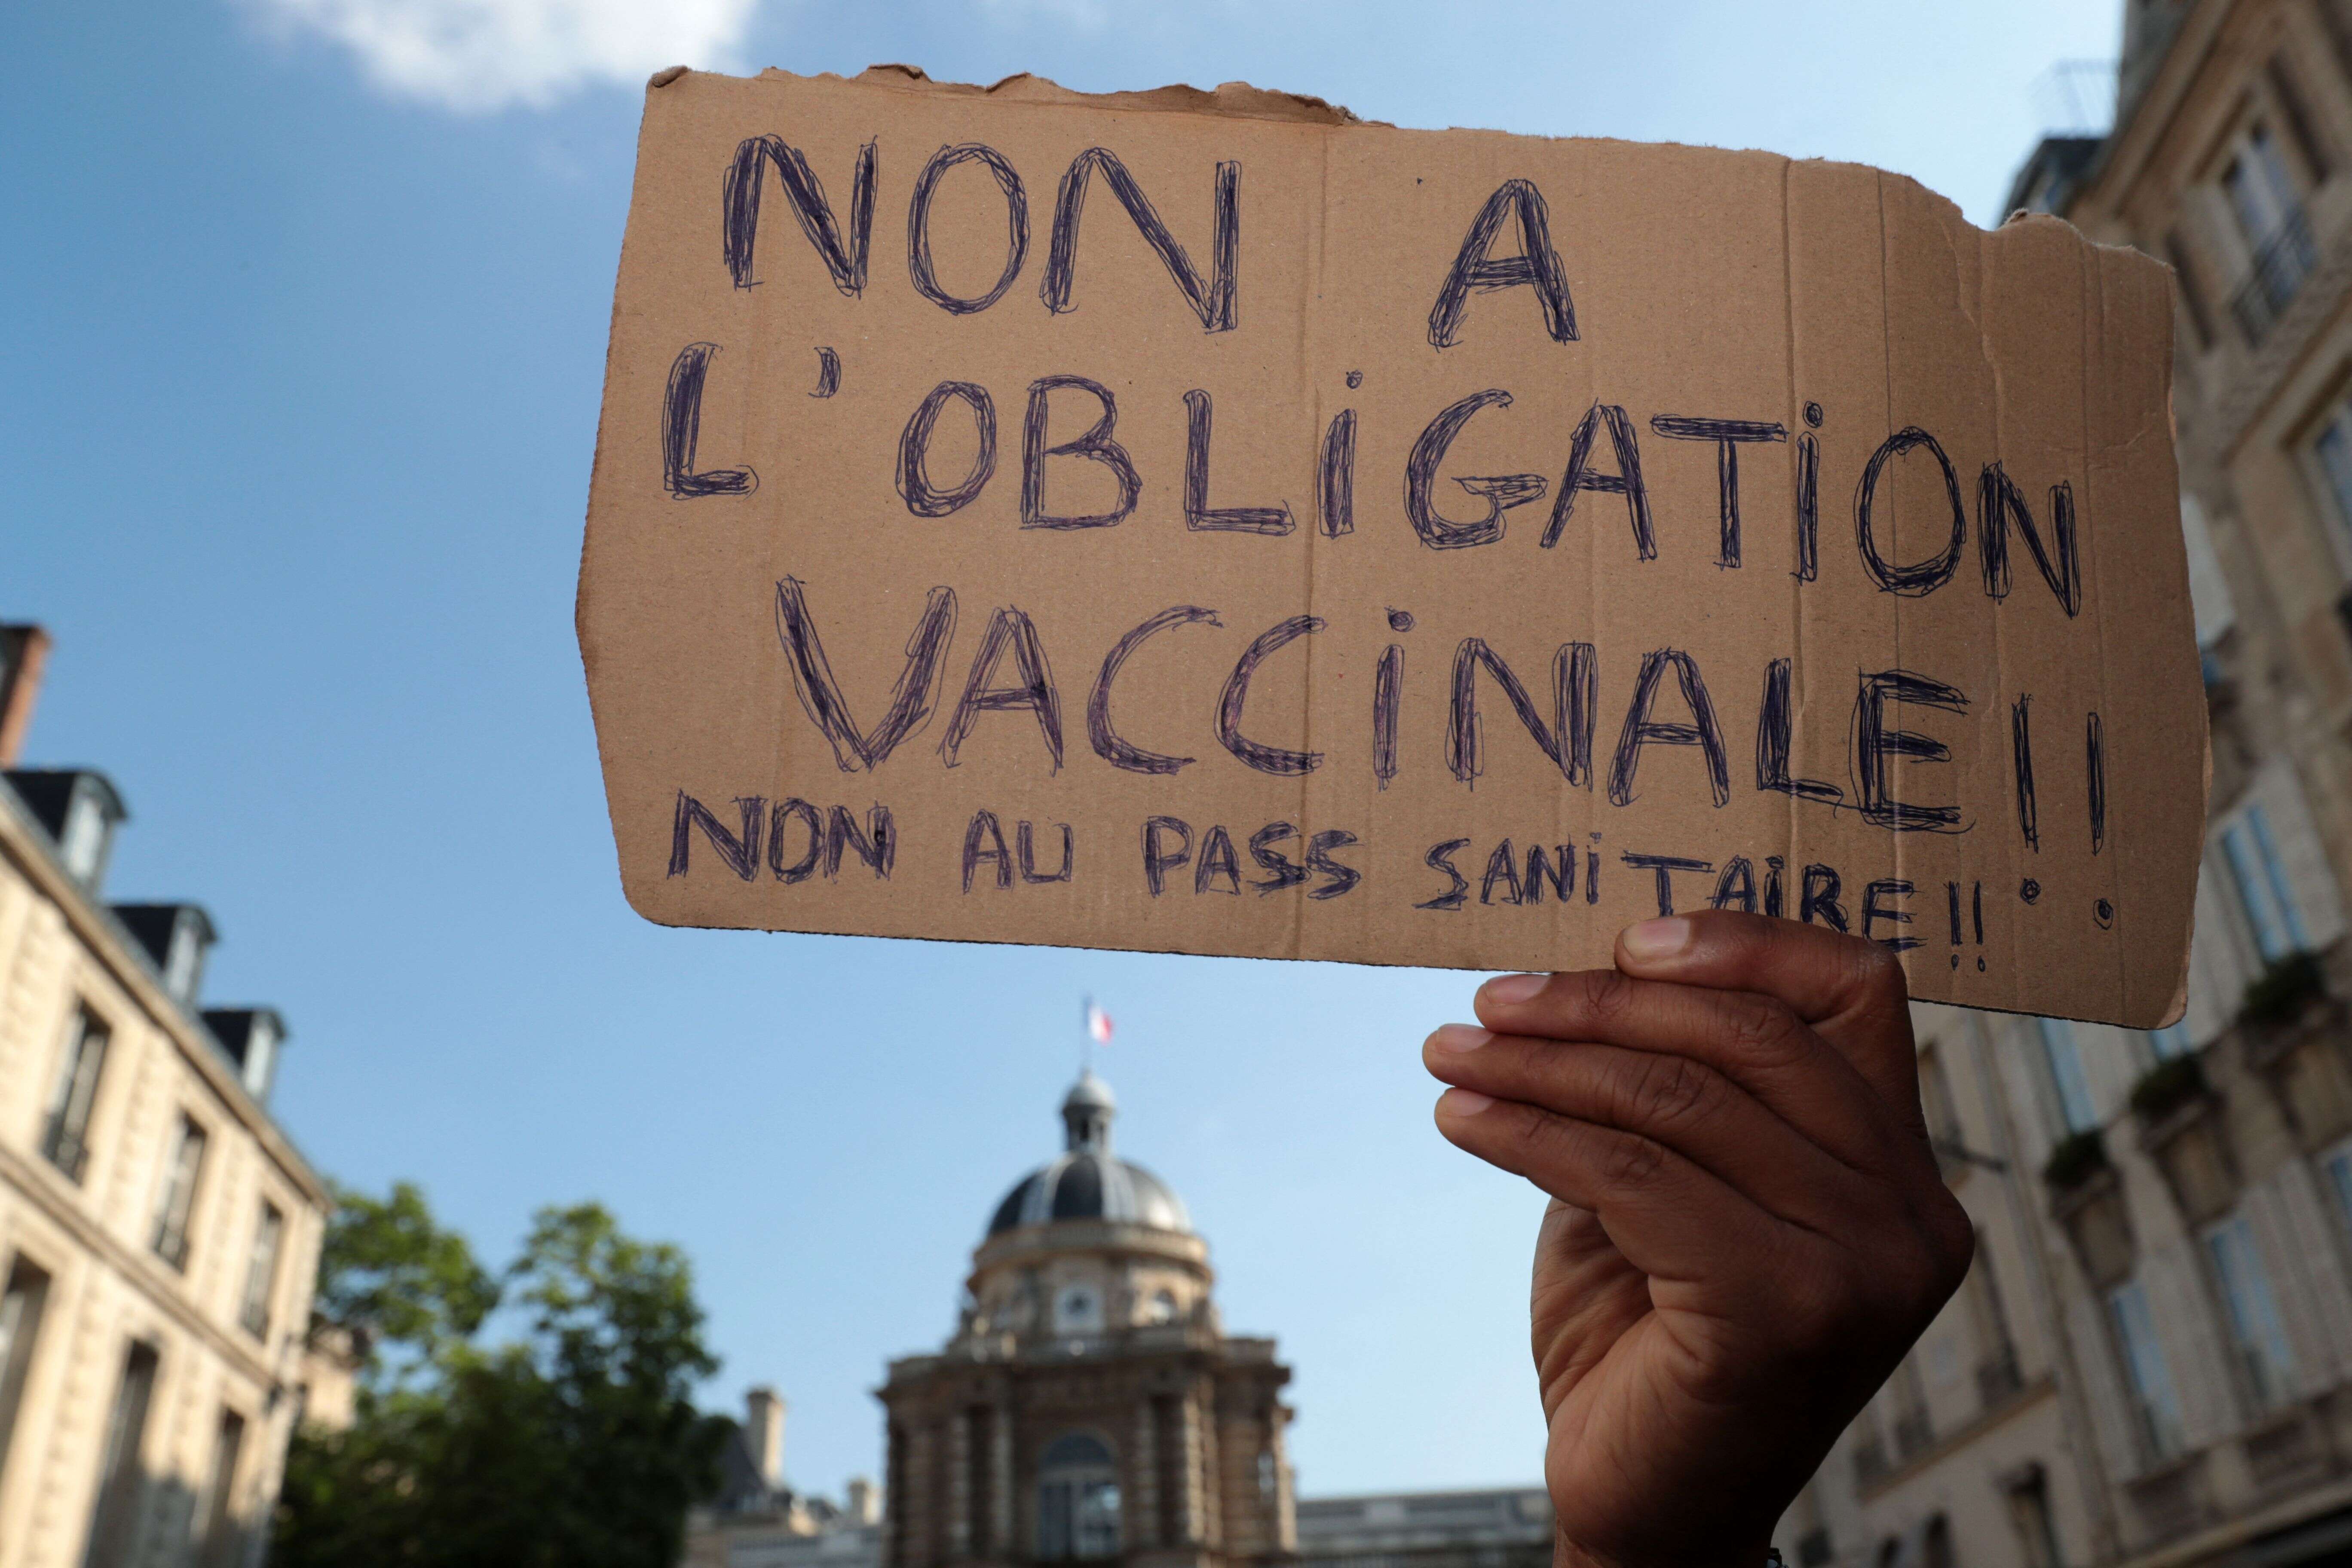 Photo prise lors d'une manifestation contre le pass sanitaire et la vaccination obligatoire de certaines professions à Paris le 22 juillet 2021. (Photo by Joël SAGET / AFP)